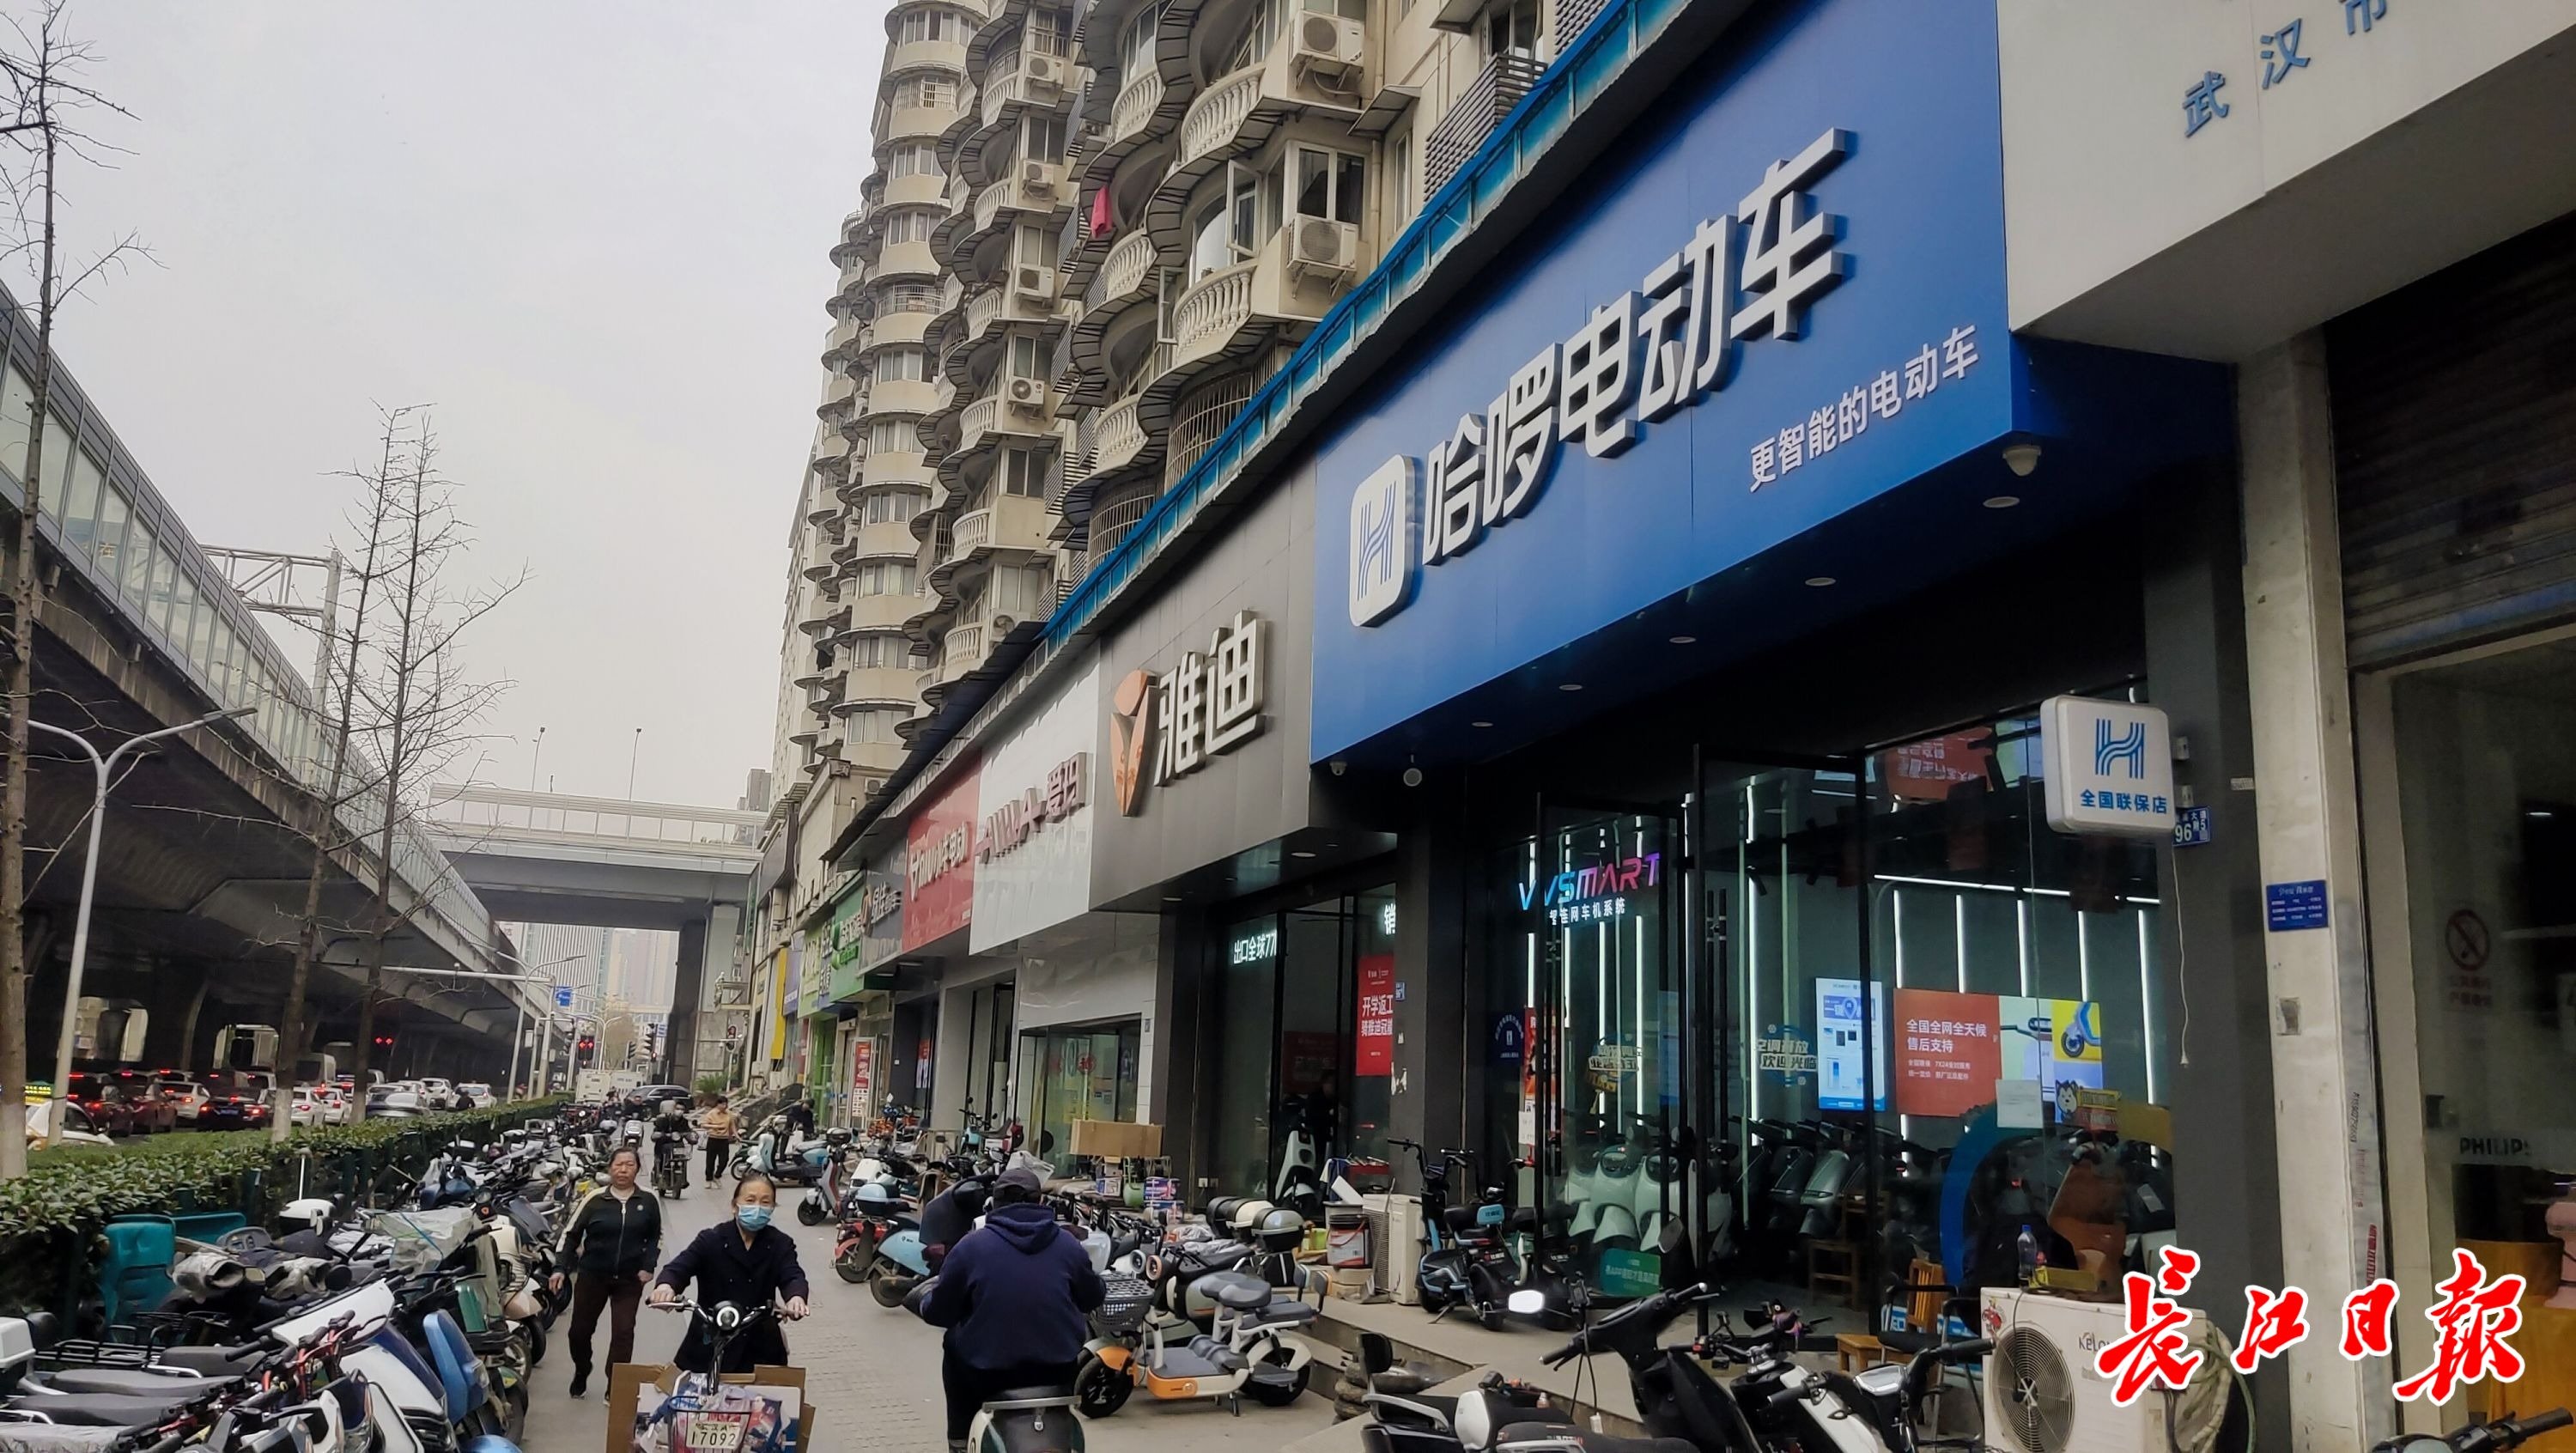 发展大道靠近常青路一带的多个电动车门店。记者邓小龙 摄